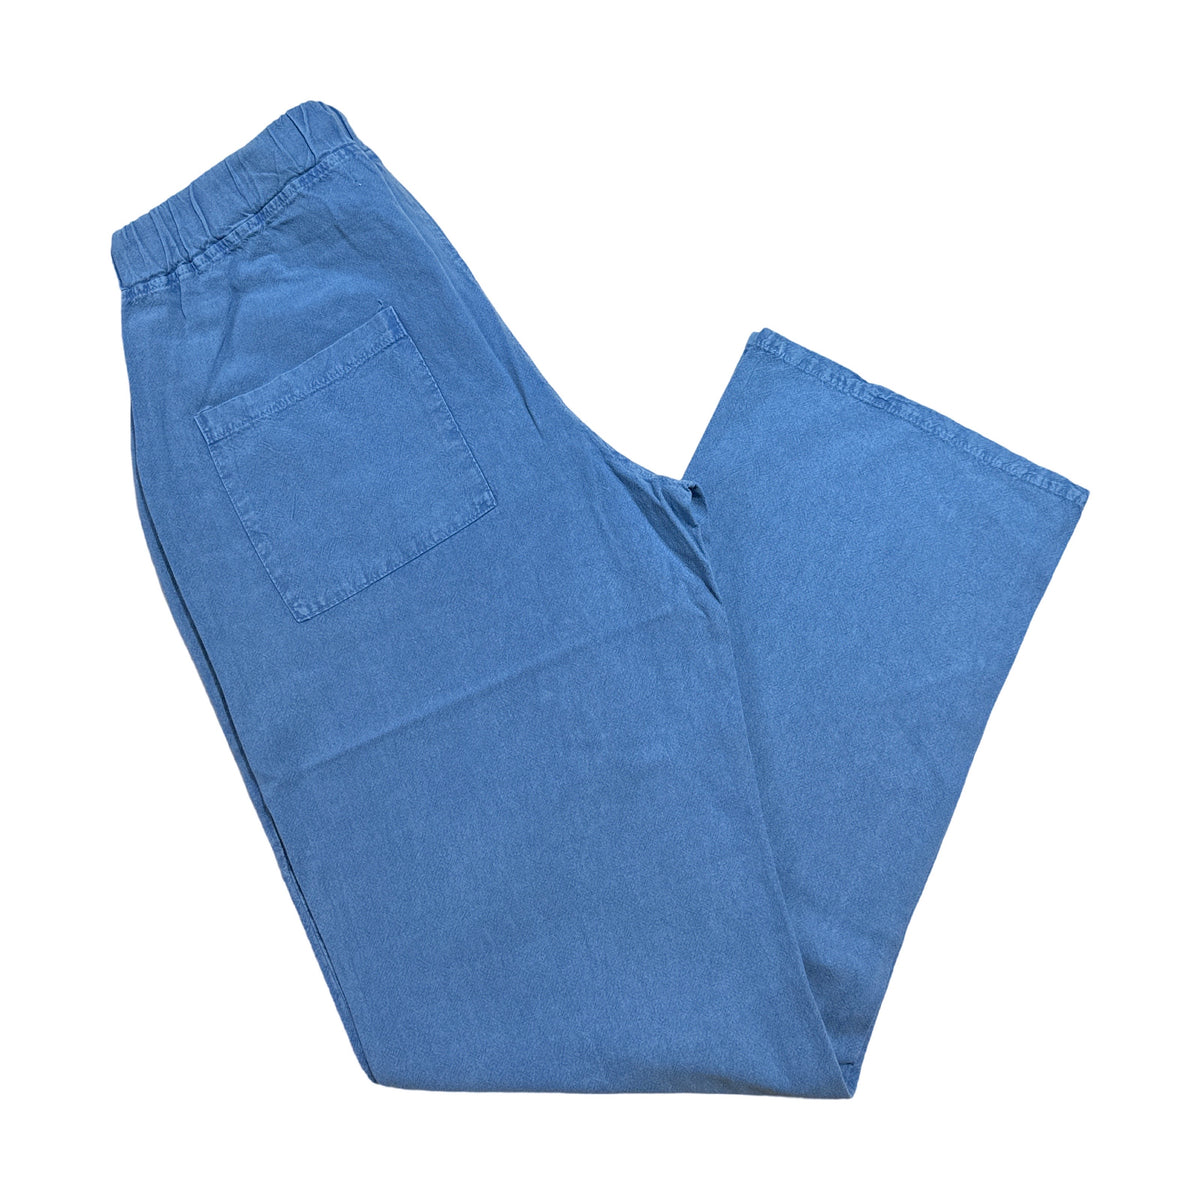 Seaspice Powder Blue Double Pocket Peruvian Cotton Pants - Dudes Boutique